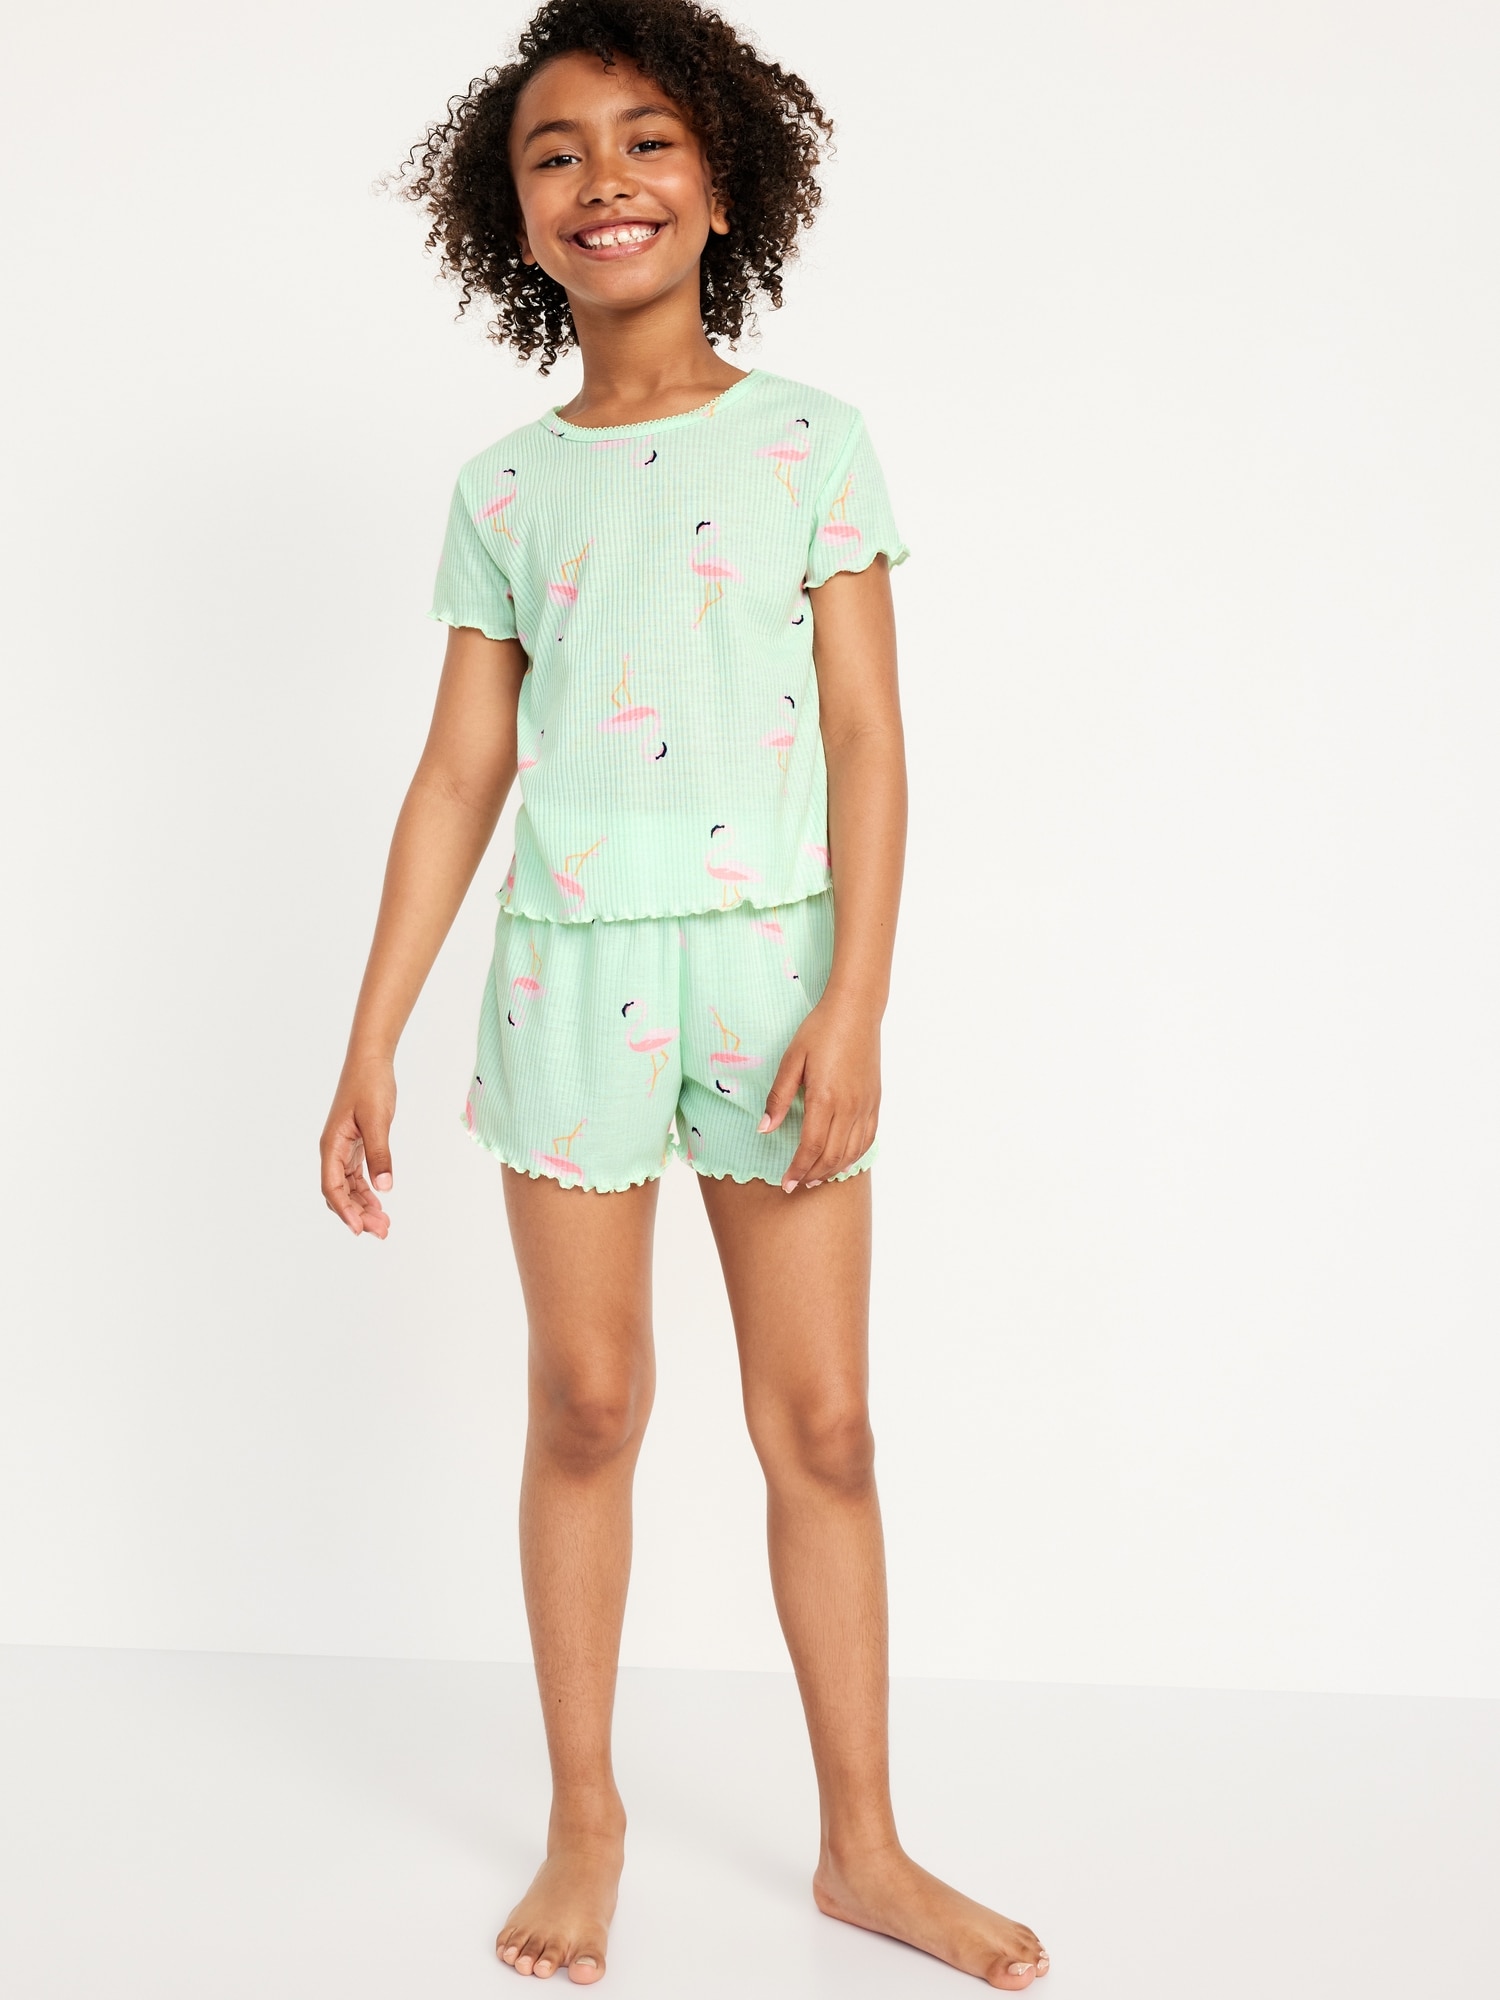 Printed Rib-Knit Pajama Top and Shorts Set for Girls